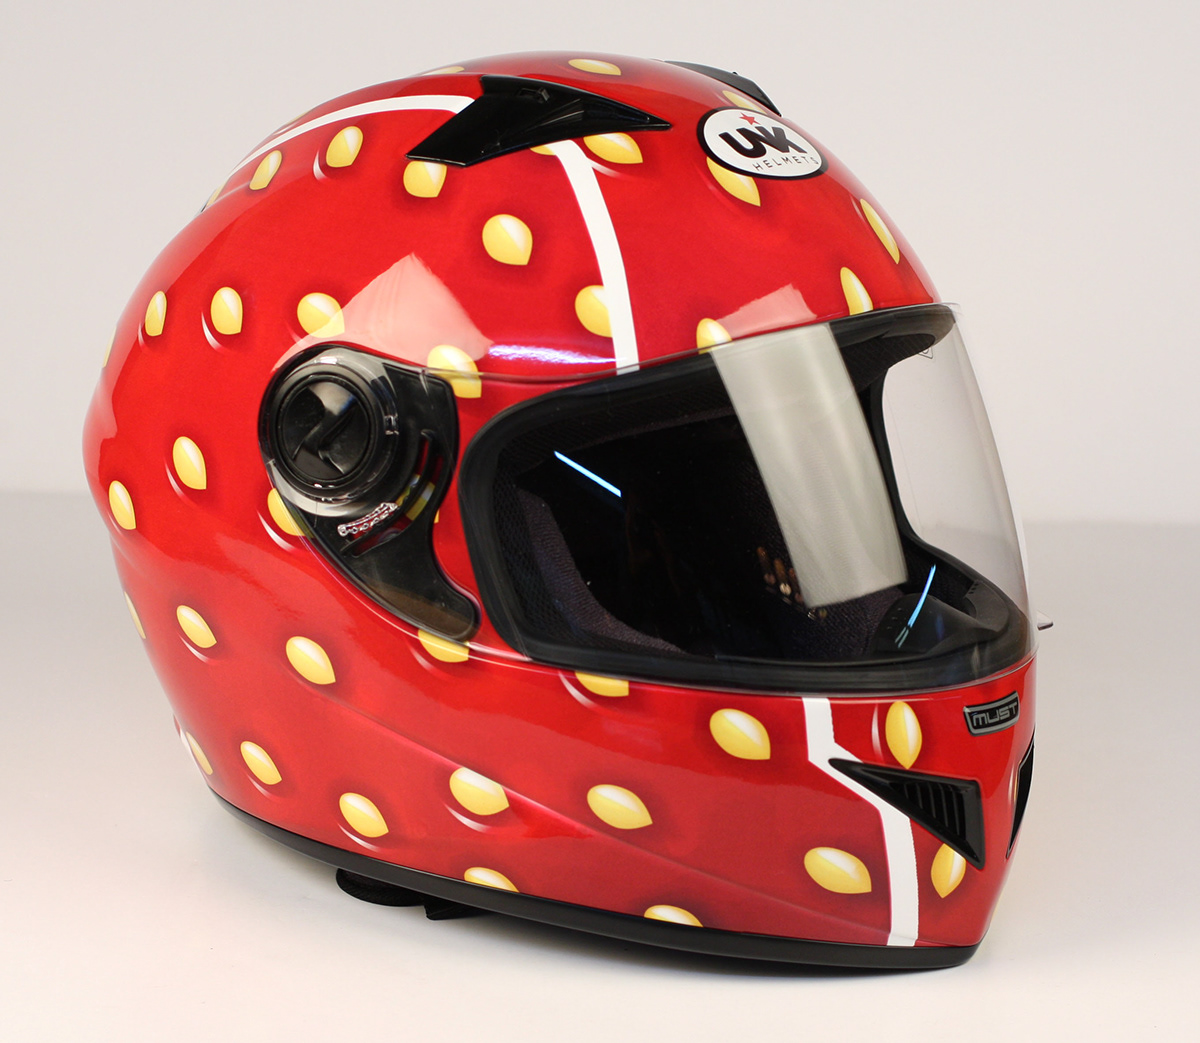 Helmet design new innovation